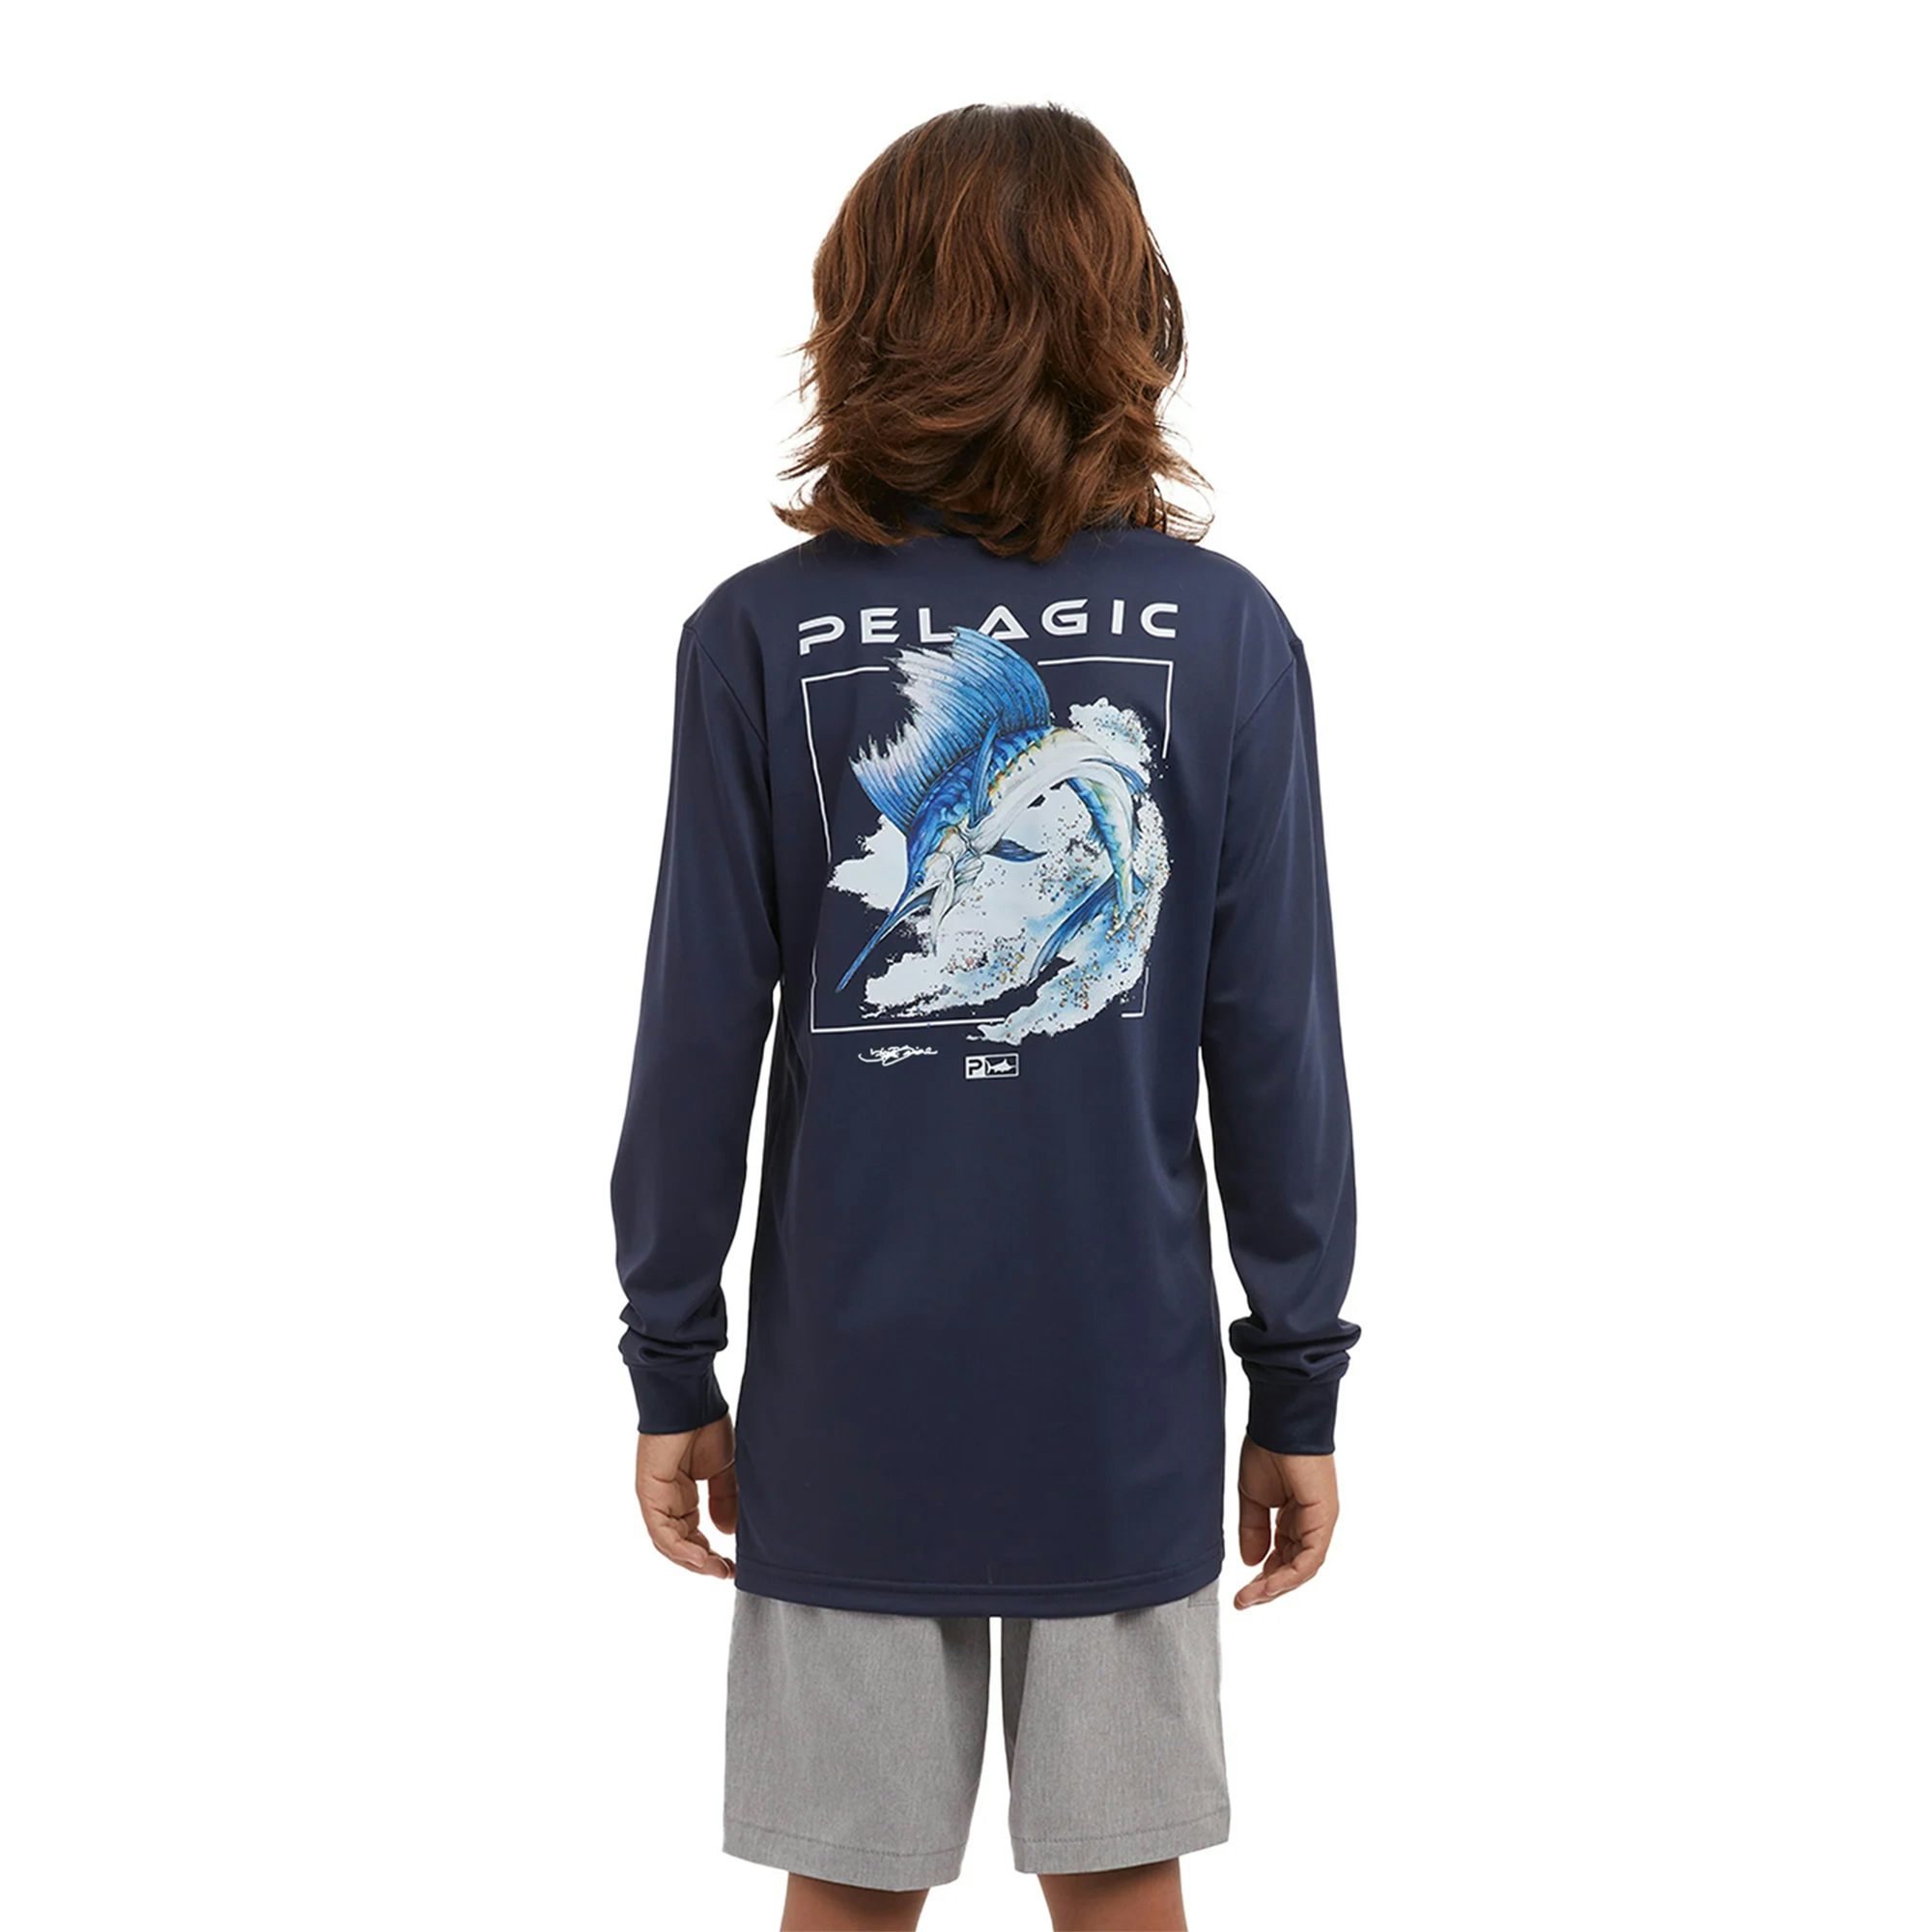 Pelagic Aquatek Sailfish Long Sleeve Performance Shirt (Kid’s)